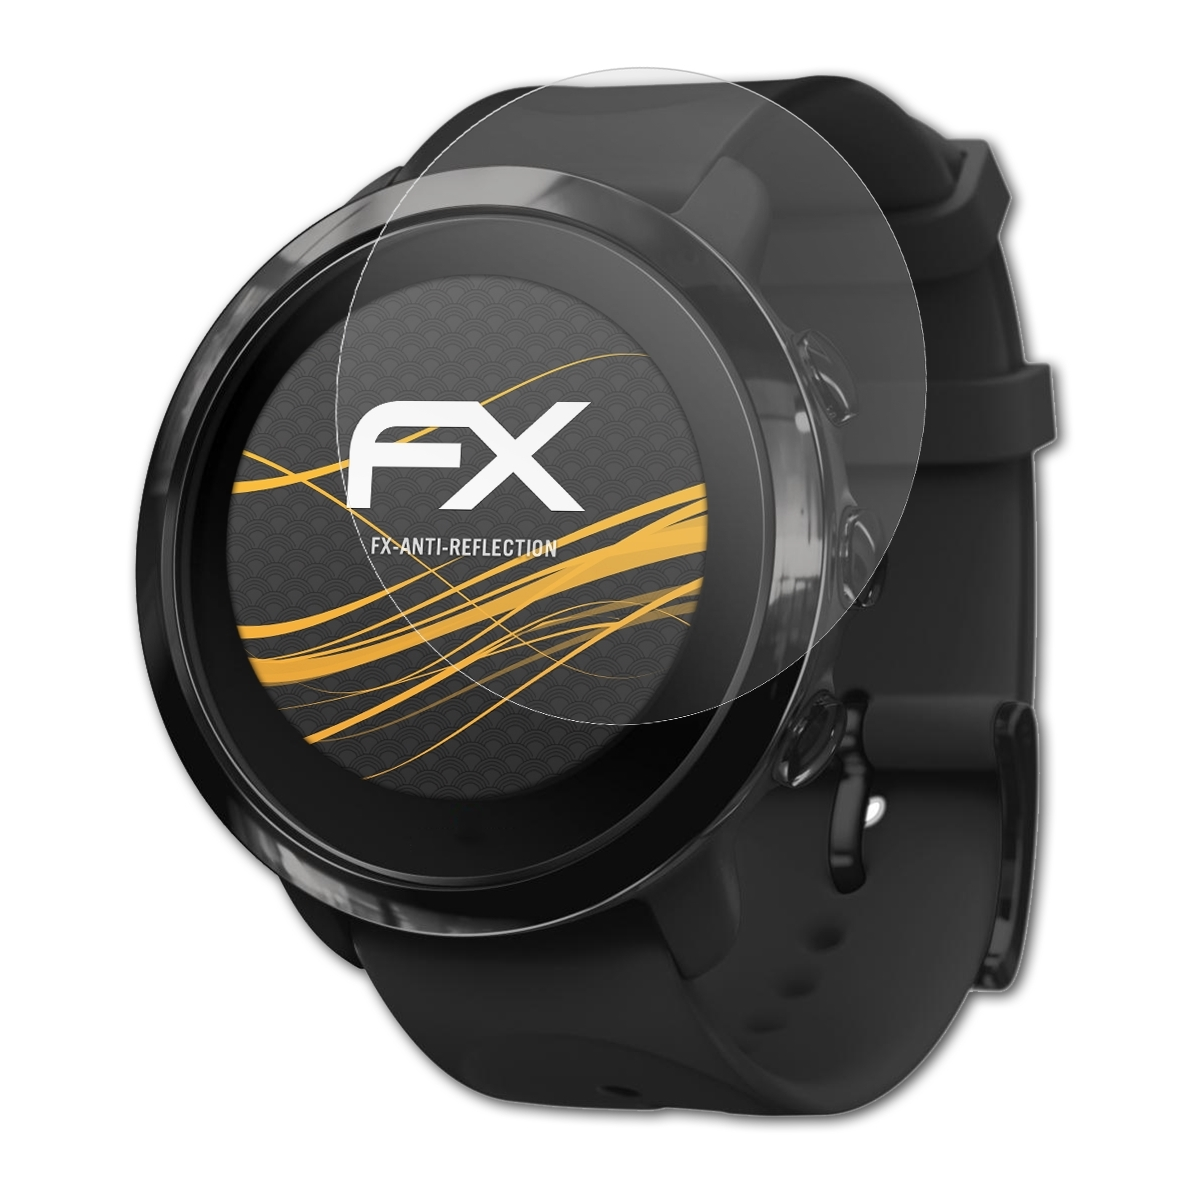 ATFOLIX 3x FX-Antireflex Suunto Fitness) Displayschutz(für 3